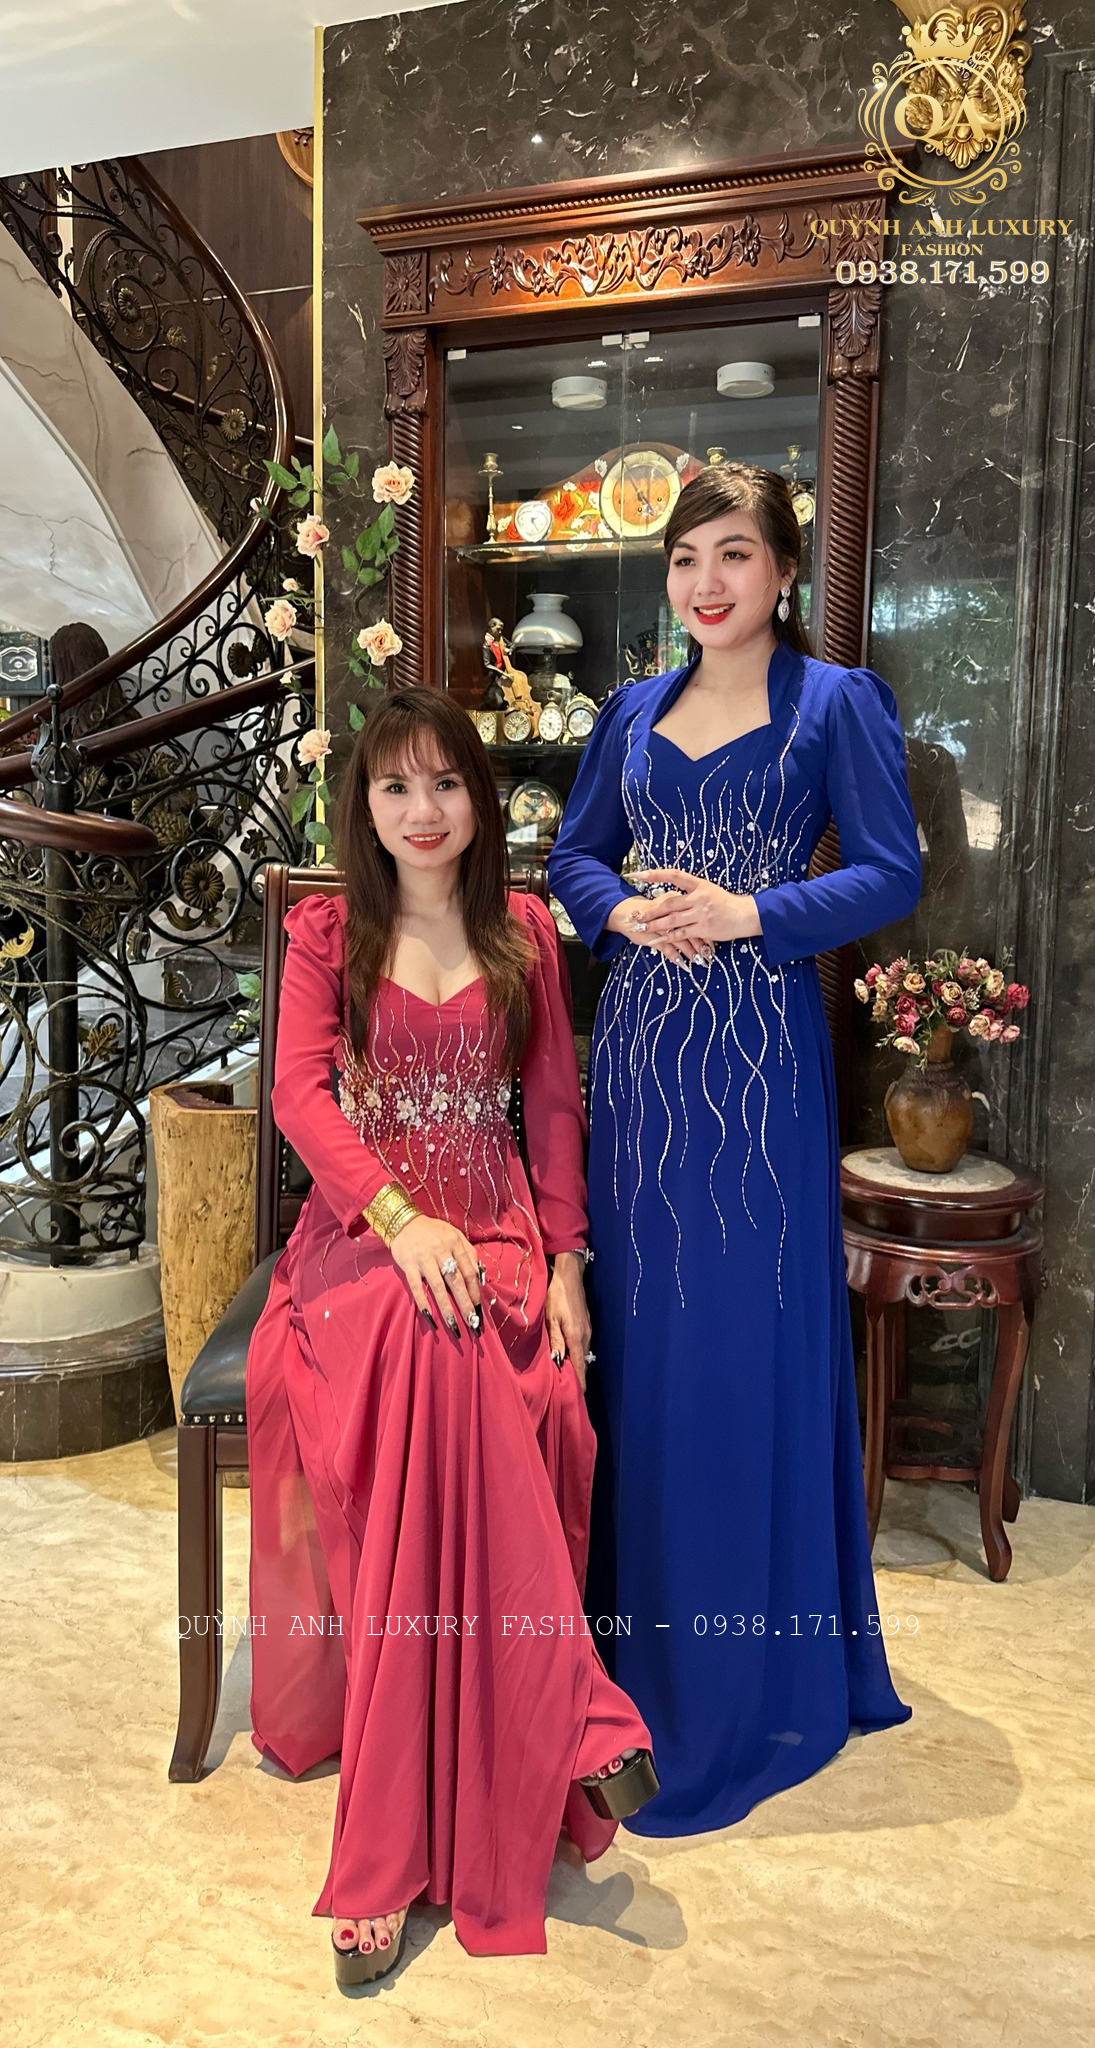 Mẫu áo dài dạ hội nữ hoàng best seller nhà Quỳnh Anh Luxury